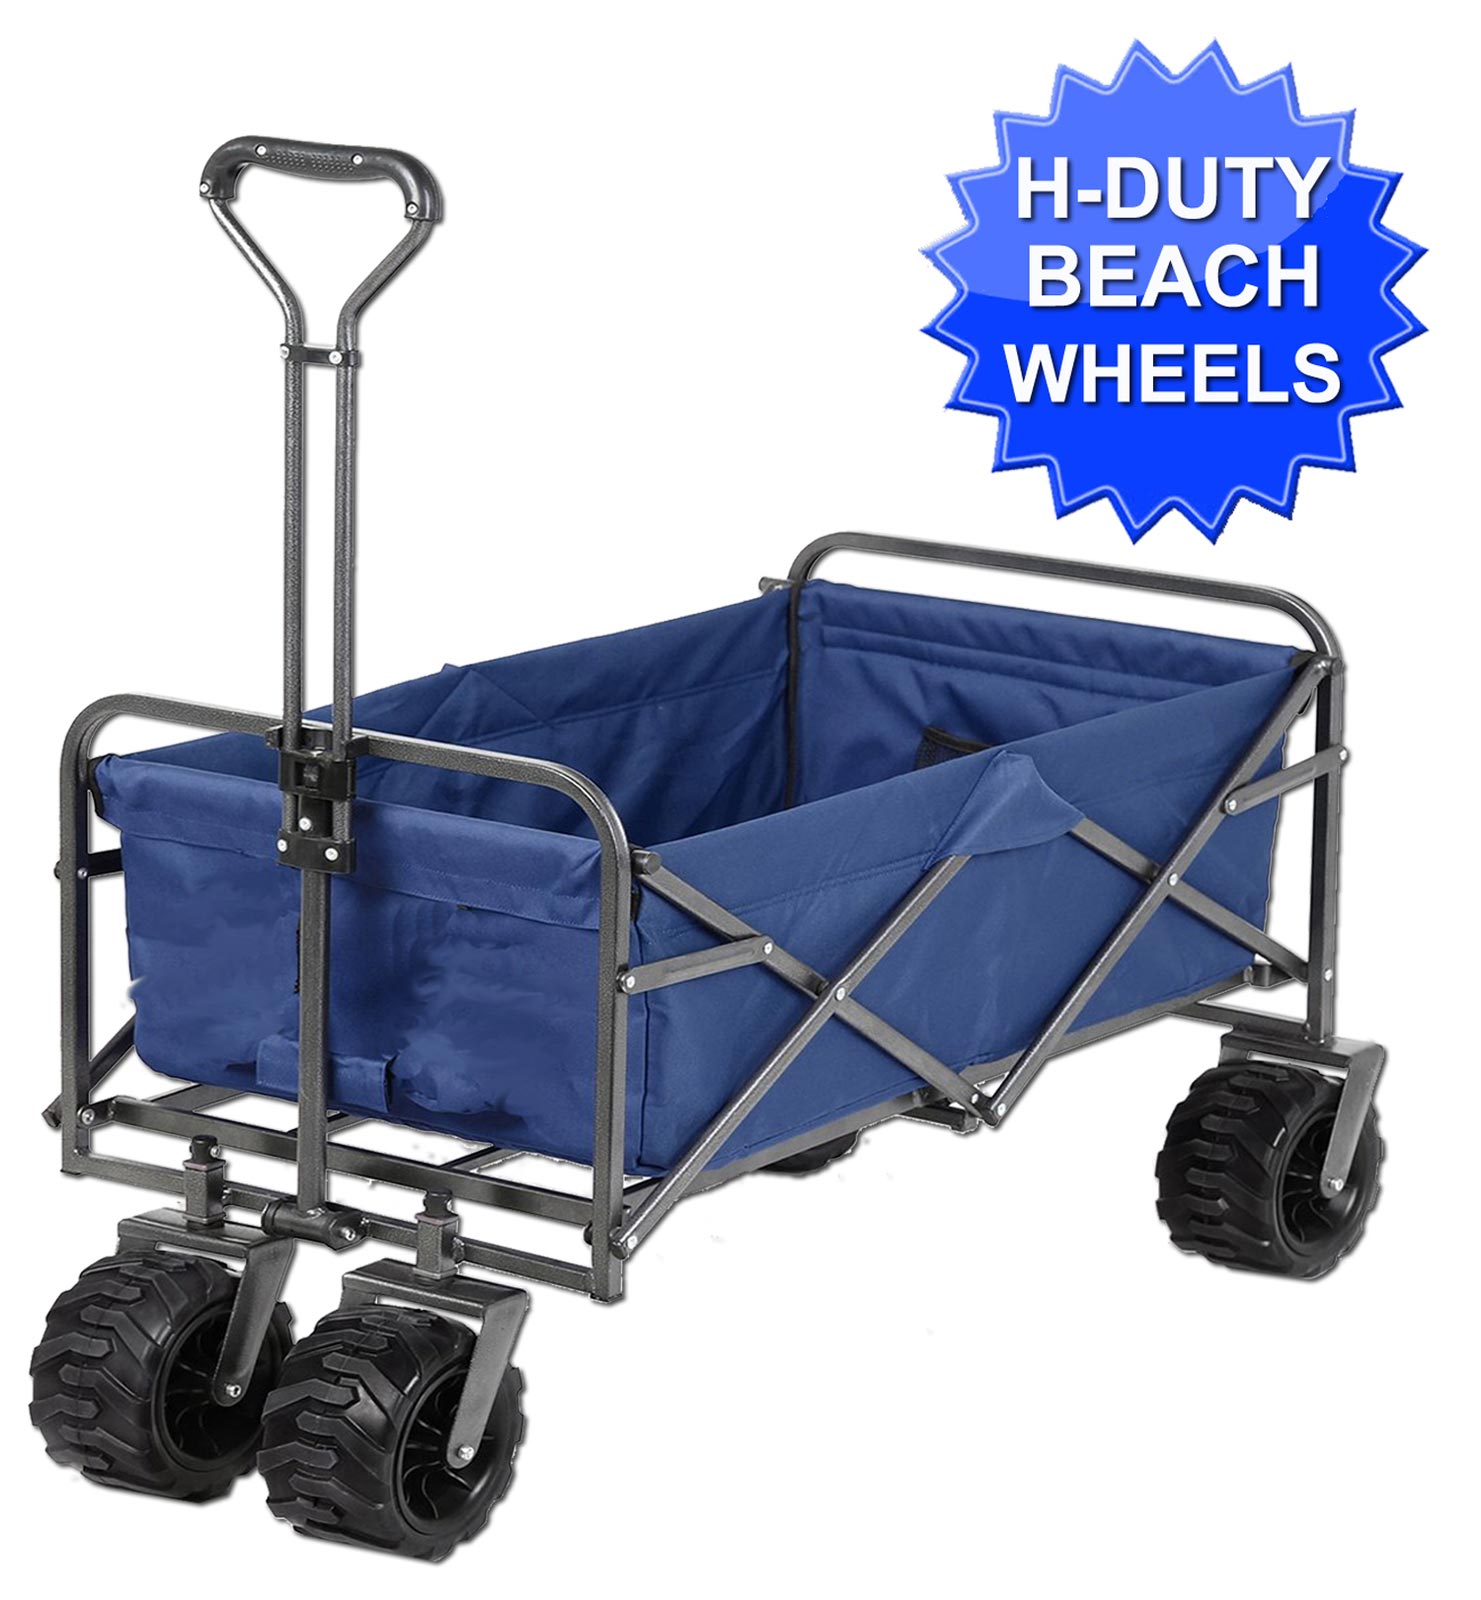 Folding Wagon Cart, Portable Large Capacity Beach Wagon, Heavy